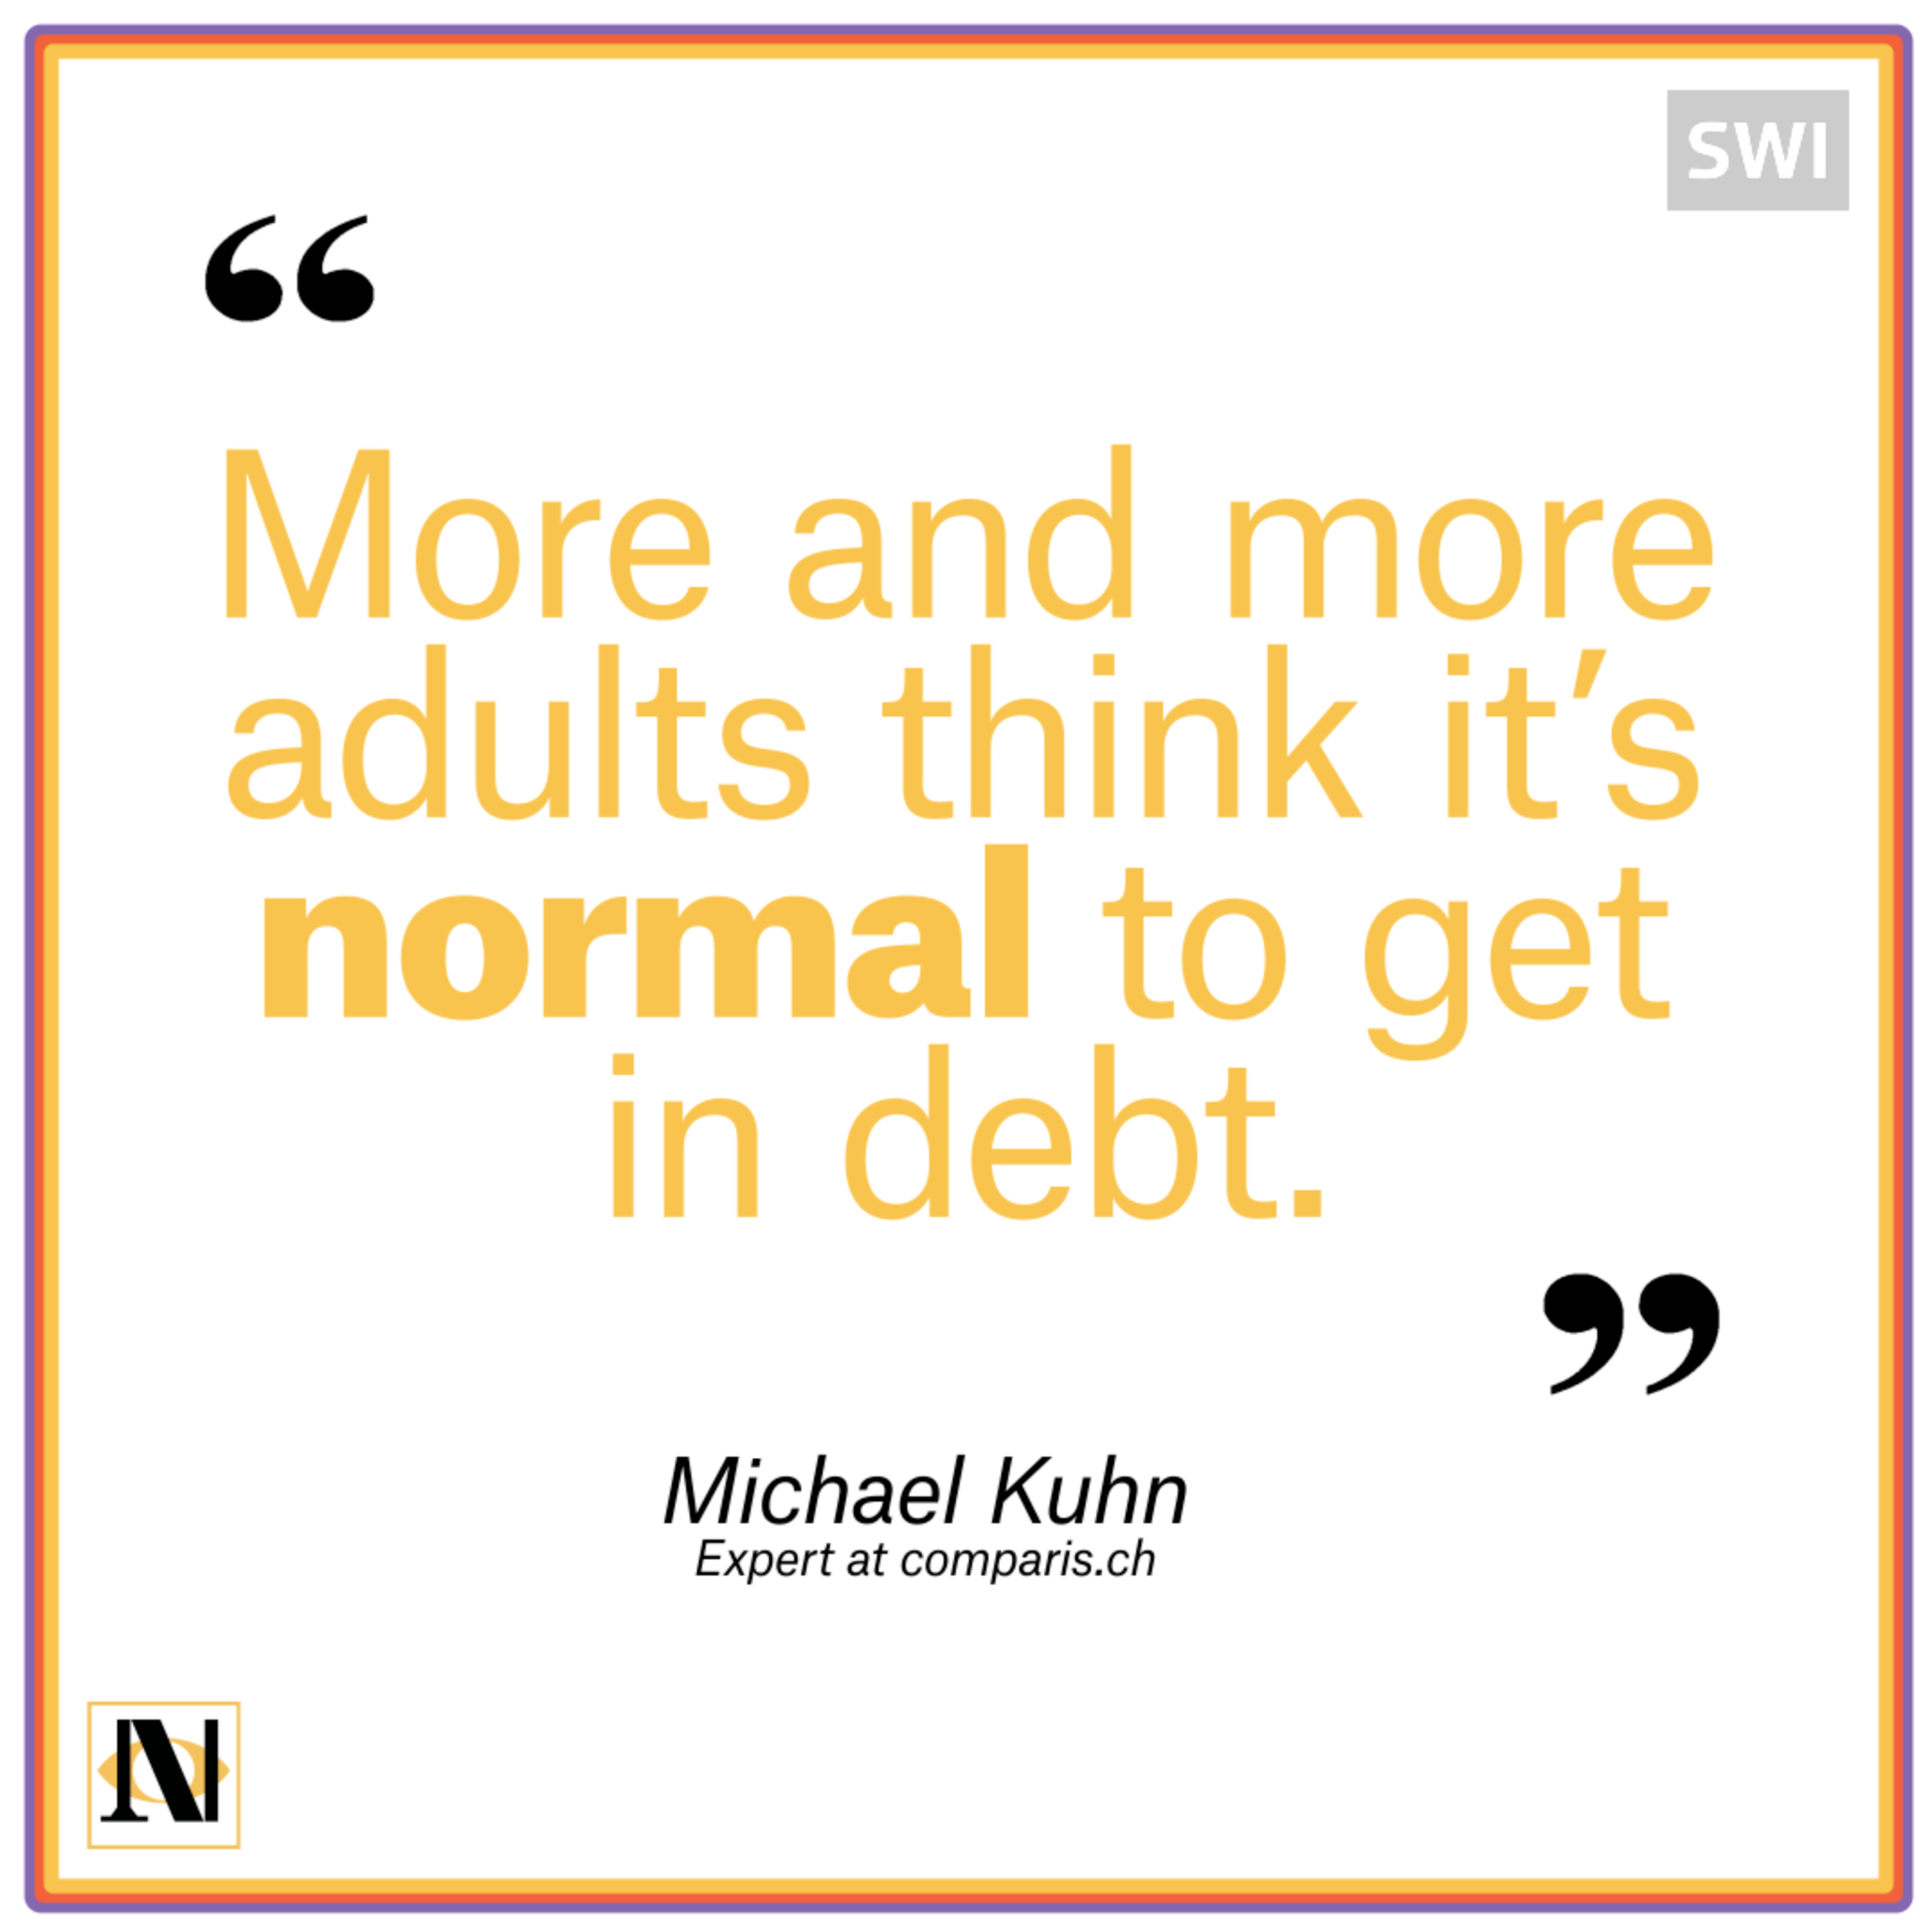 debt is normal